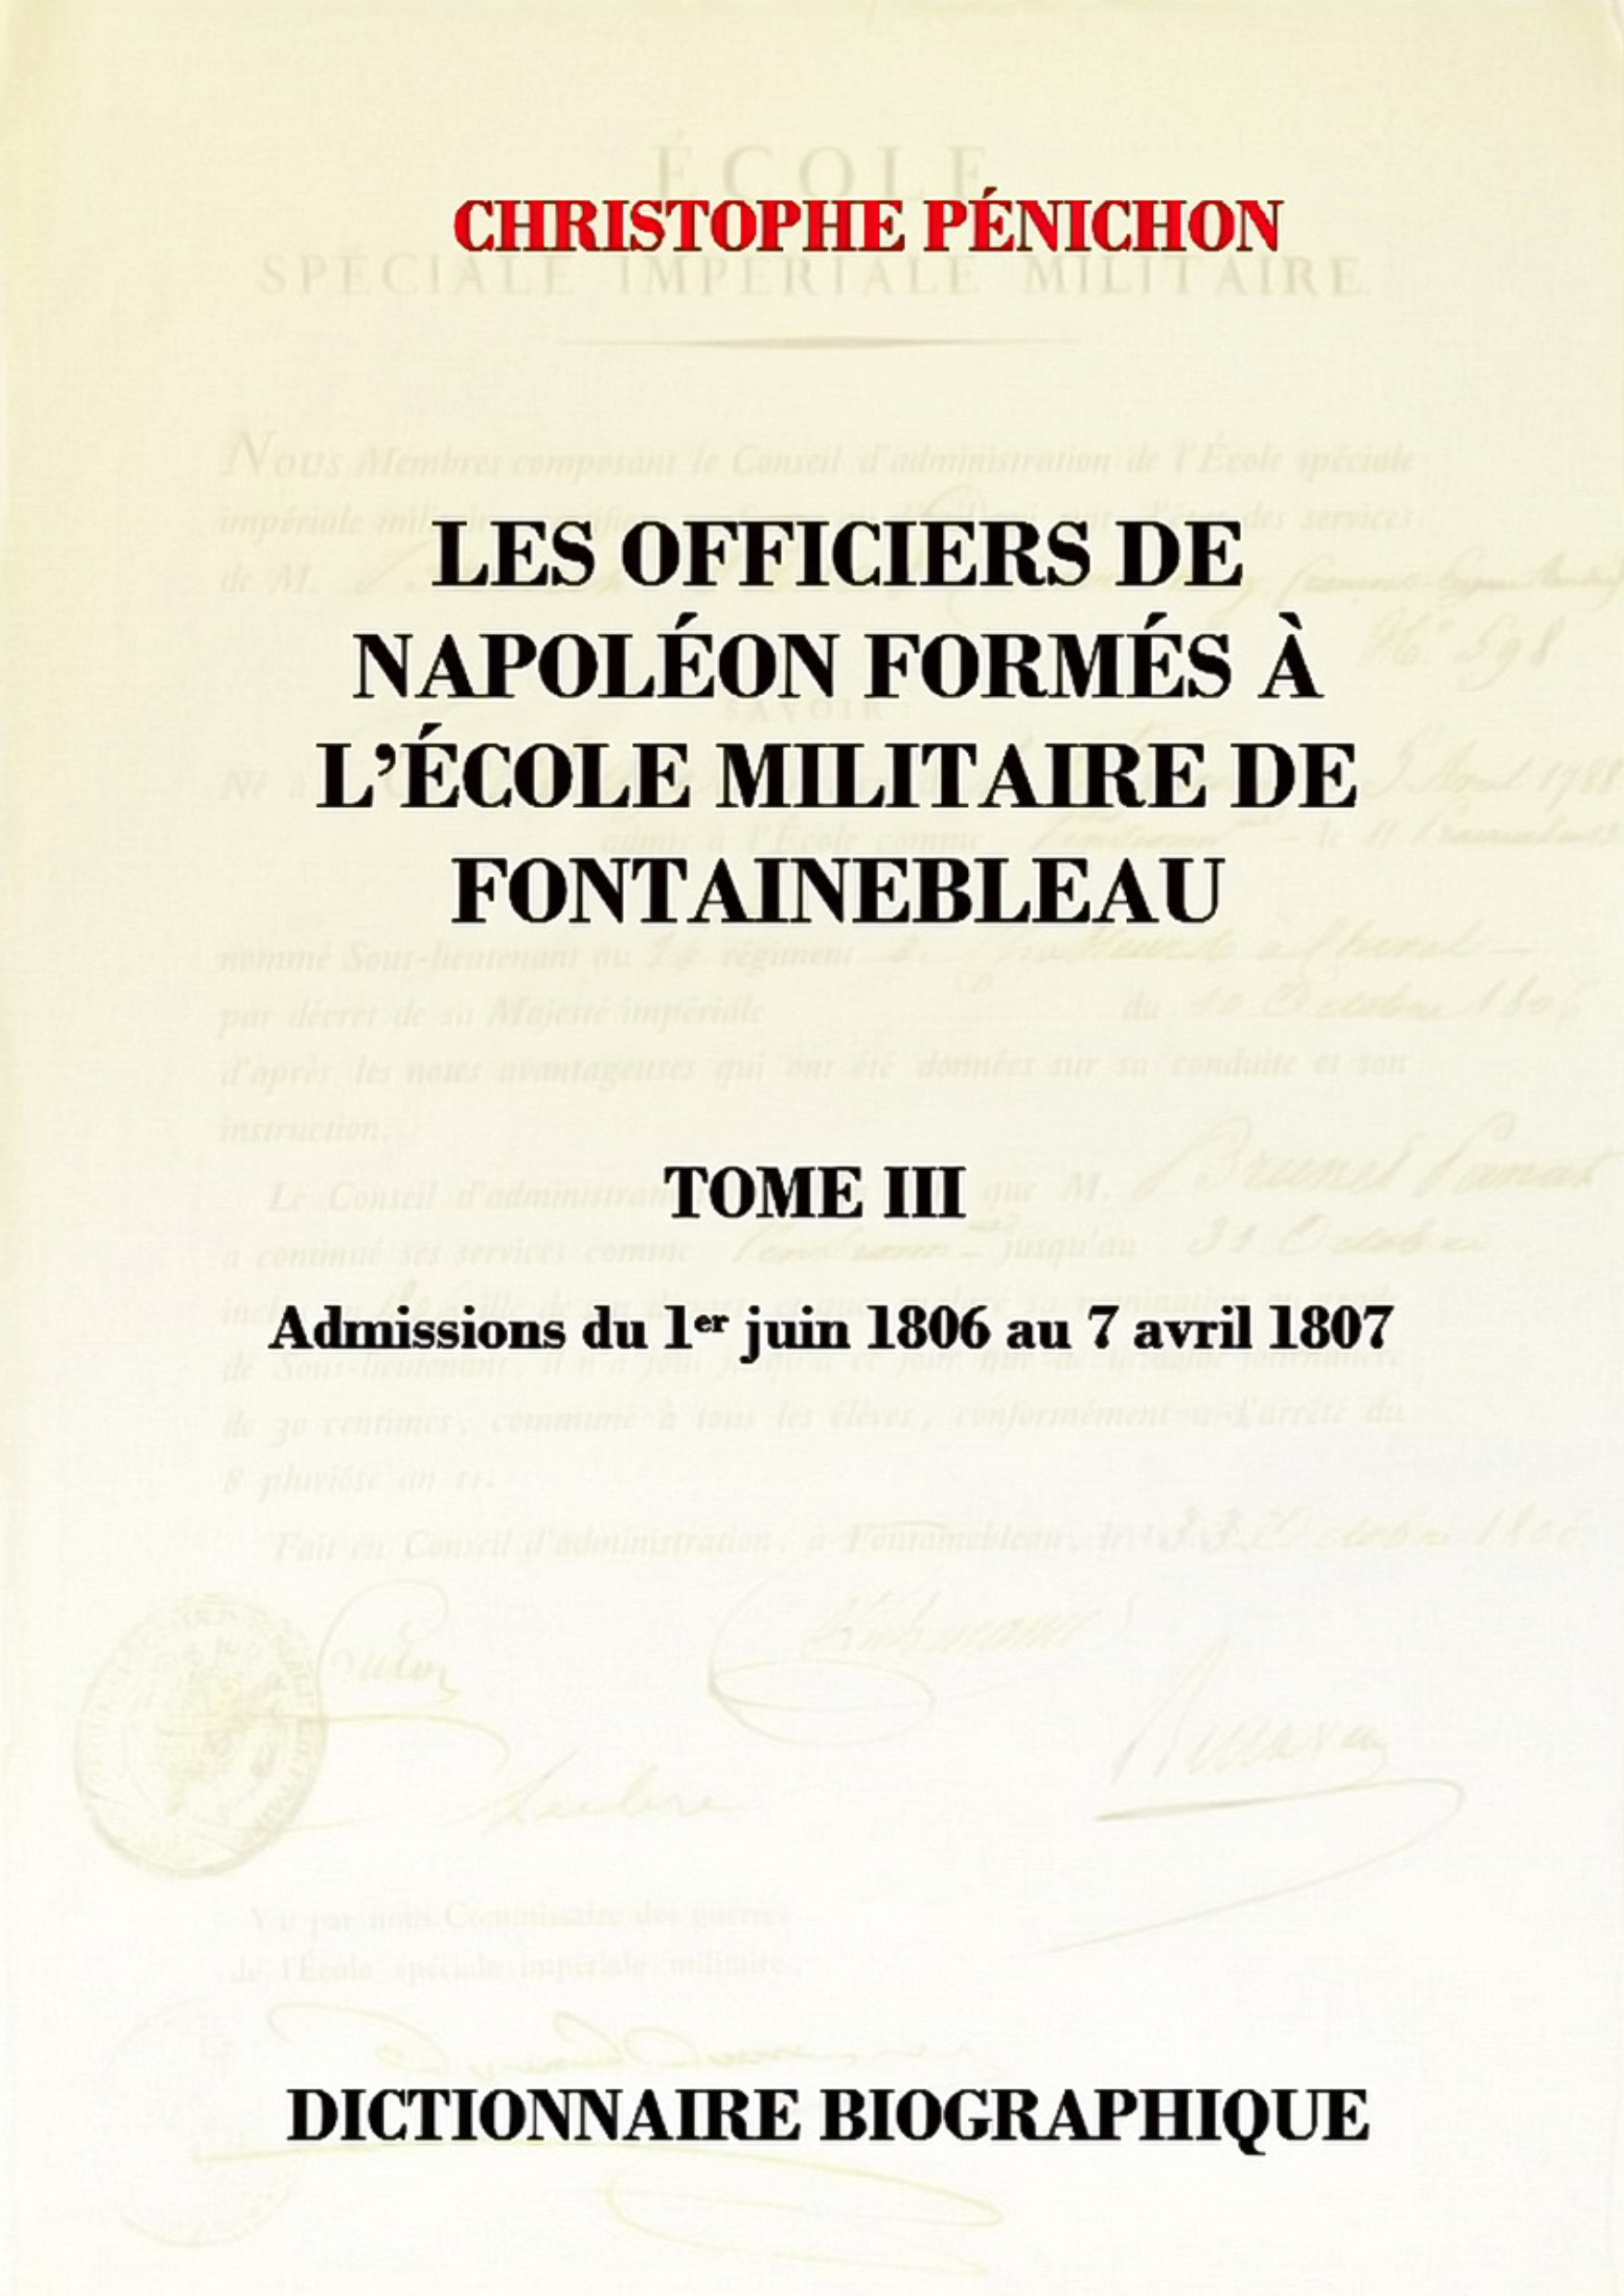 Les Officiers de Napoléon tome III